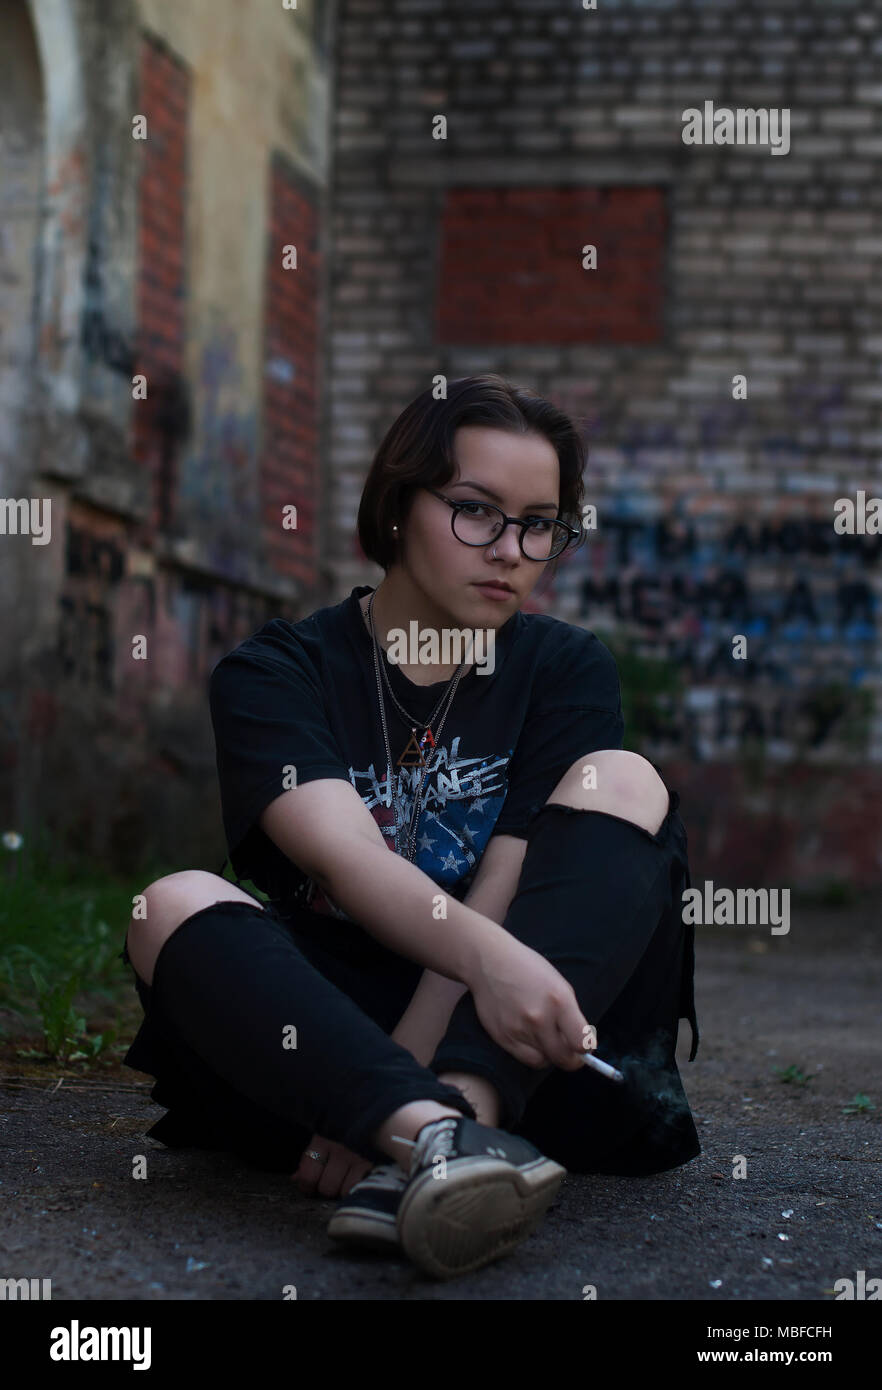 Une fille avec de courts cheveux foncés, lunettes, My Chemical Romance un t-shirt et d'une cigarette assis près d'un bâtiment ancien. Banque D'Images